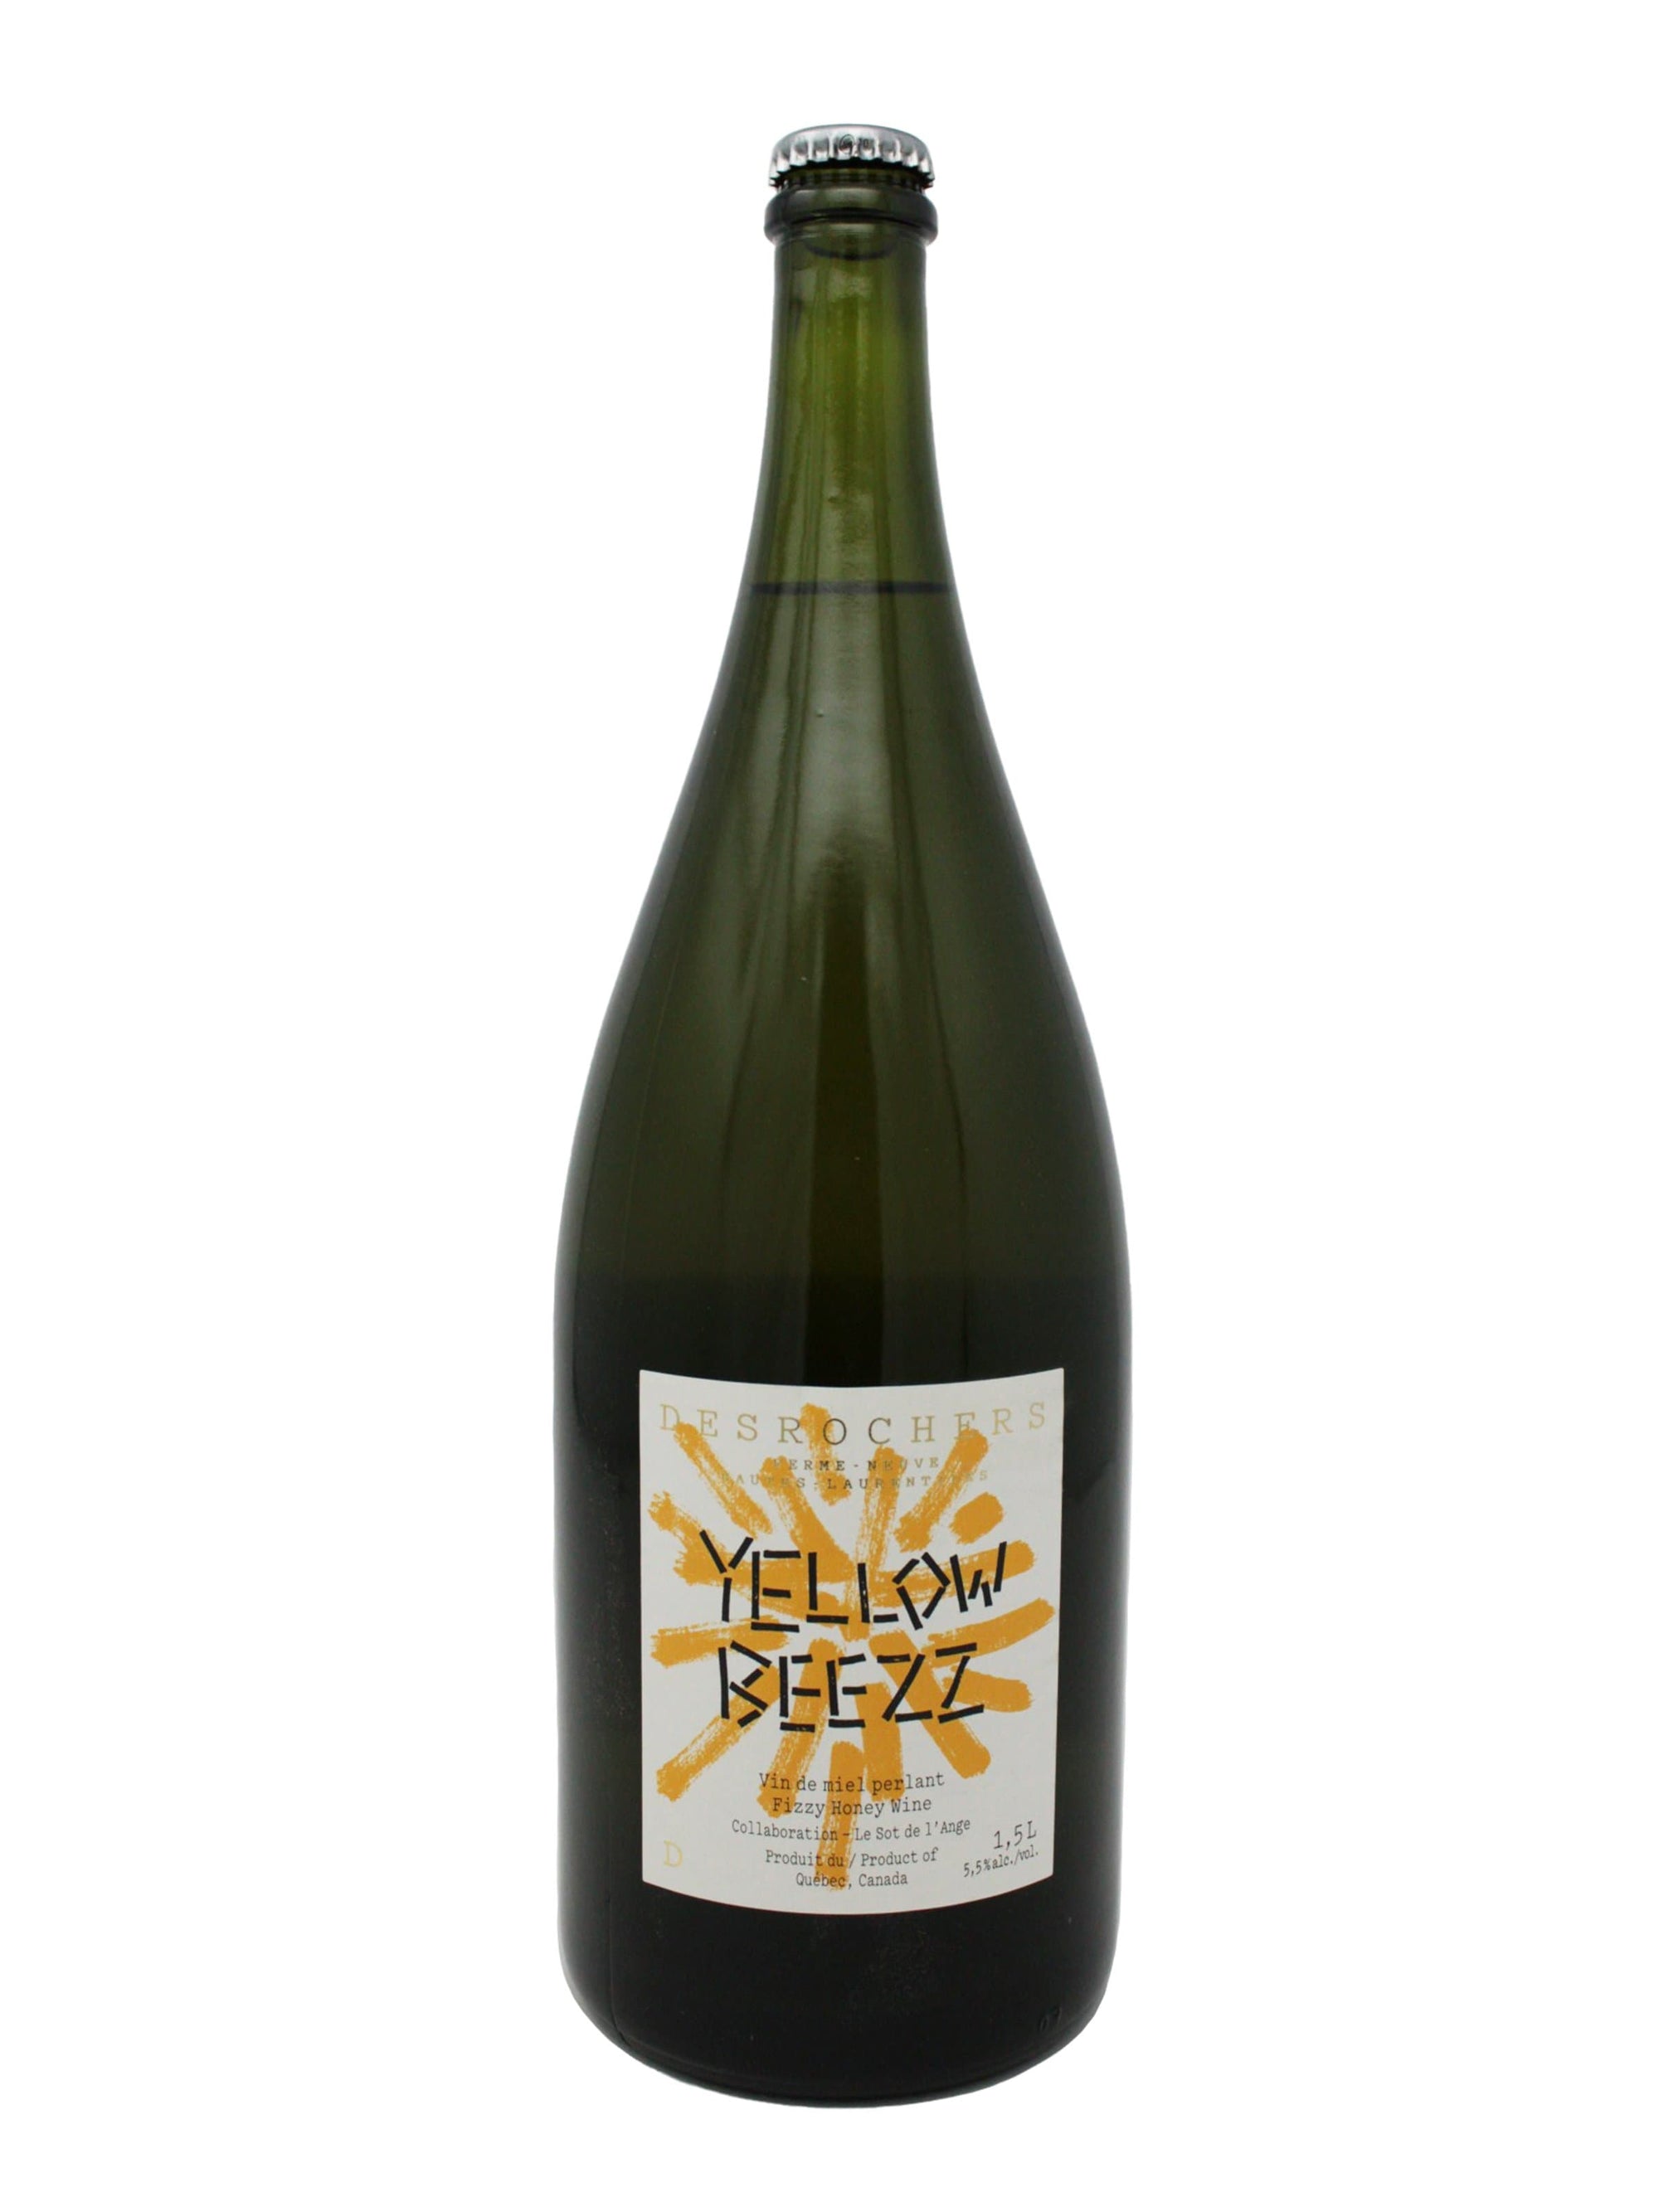 Ferme Apicole Desrochers D. autre Yellow Beezz 2019 (Magnum) - Vin de miel de la Ferme Apicole Desrochers D.